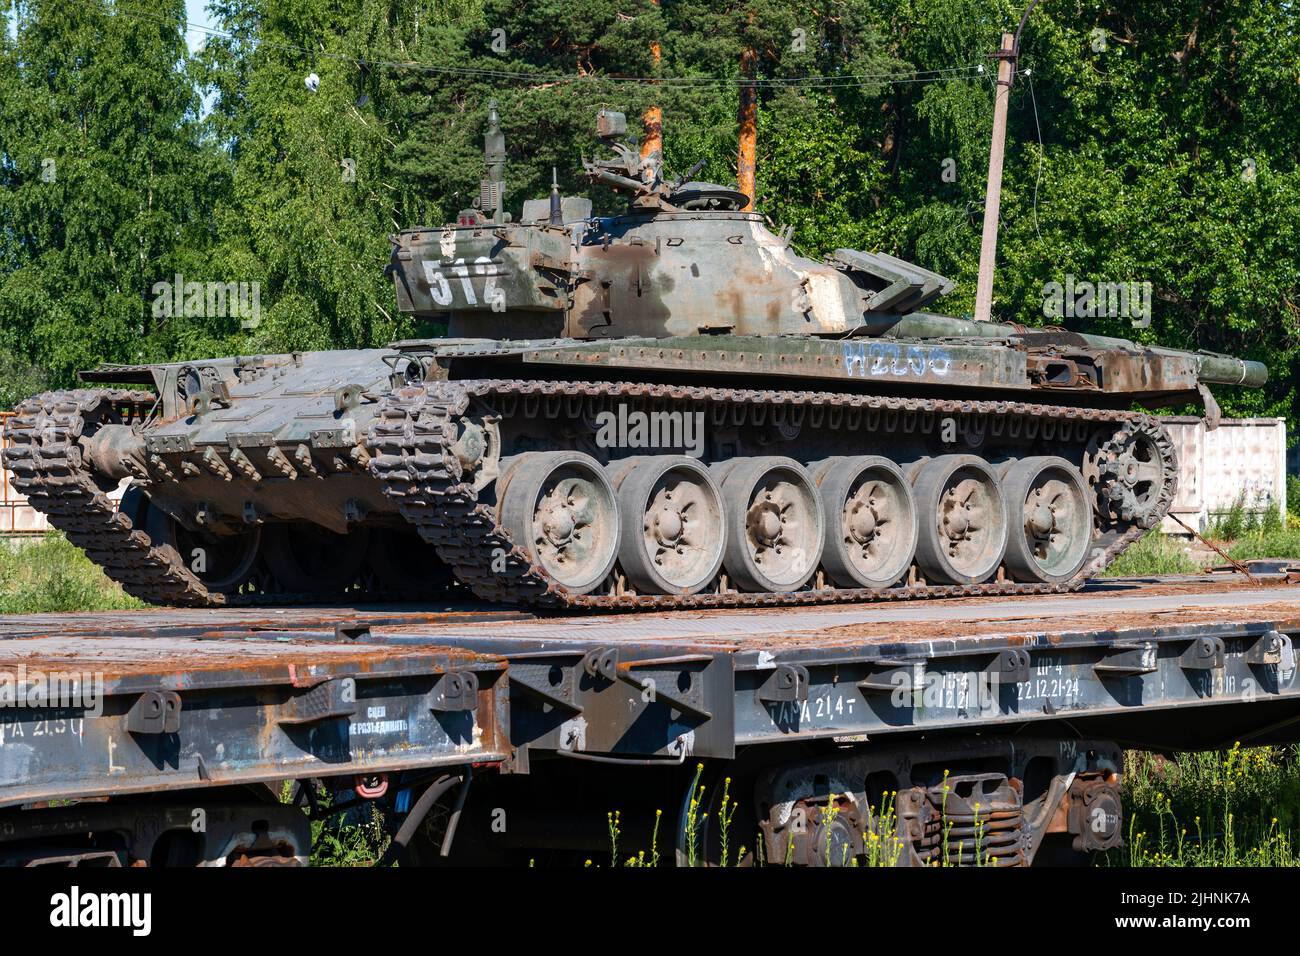 RÉGION DE LENINGRAD, RUSSIE - 02 JUILLET 2022 : ancien char russe sur une plate-forme ferroviaire par une belle journée d'été. Transport de matériel militaire Banque D'Images